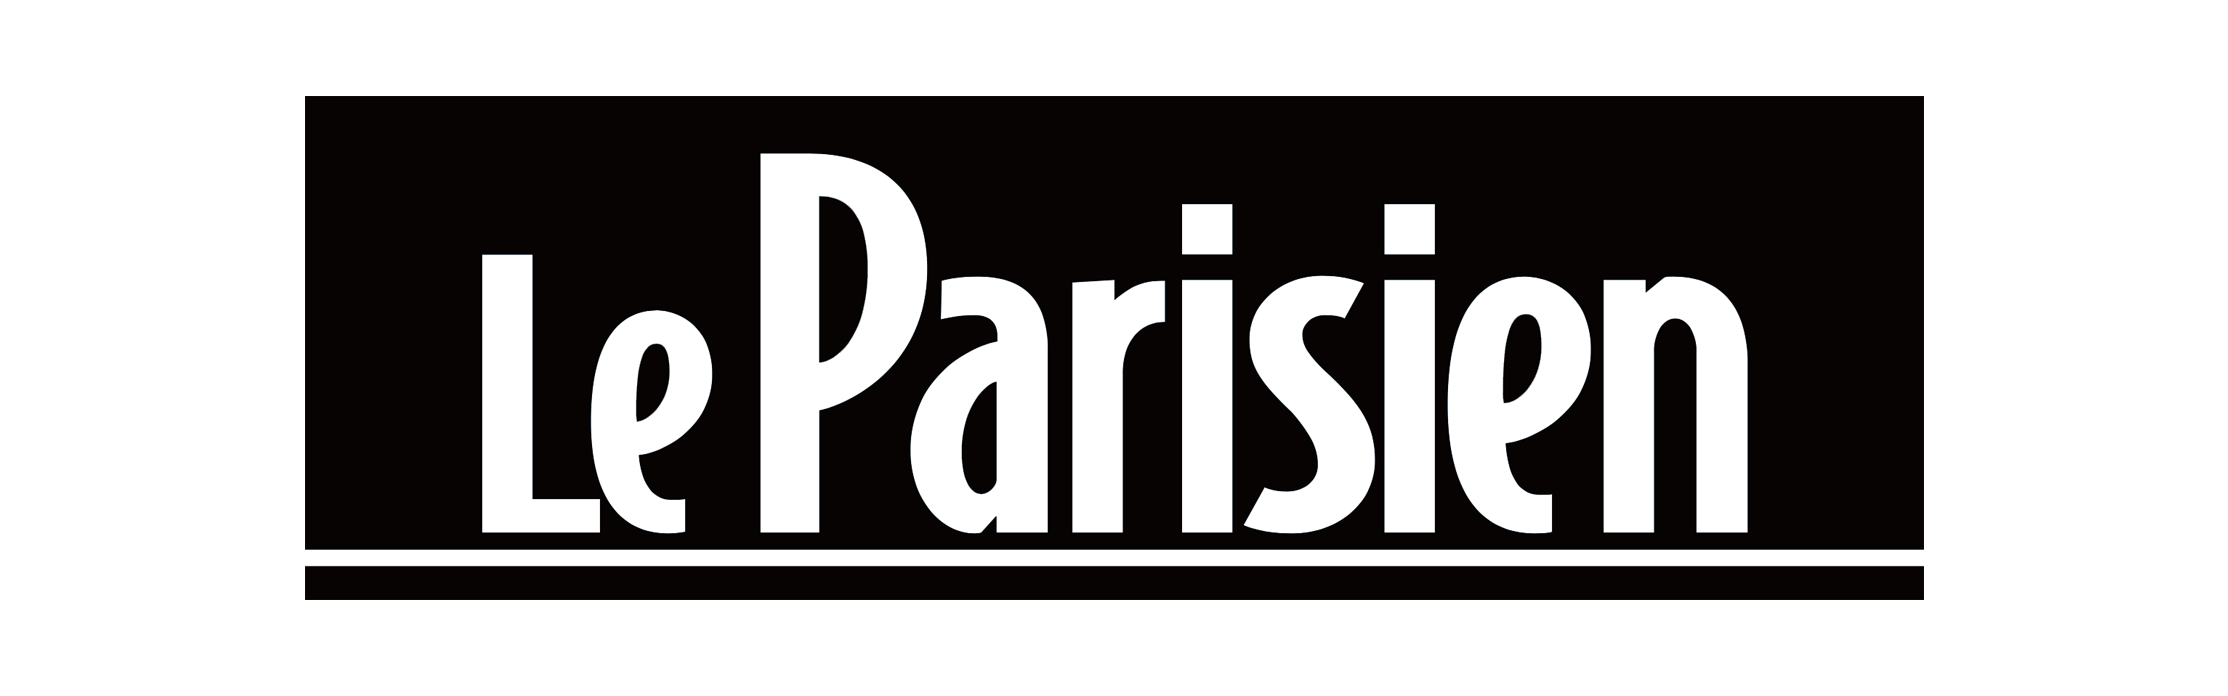 Le parisien logo copy.png